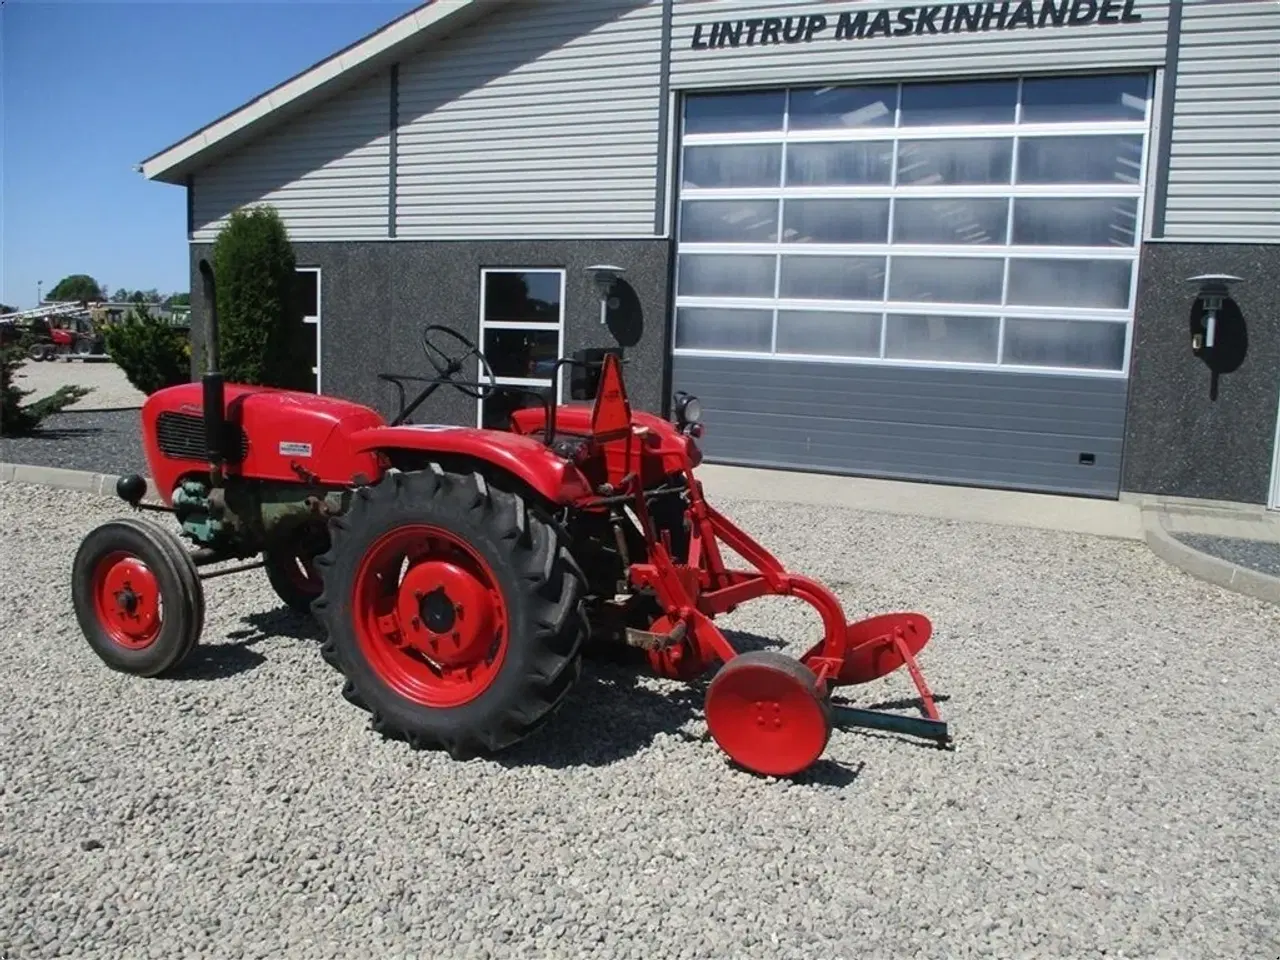 Billede 10 - - - - Komplet sæt med traktor og Plov. Güldner 17 HK traktor og 1furet Langeskov plov. Prisen for sættet komplet.